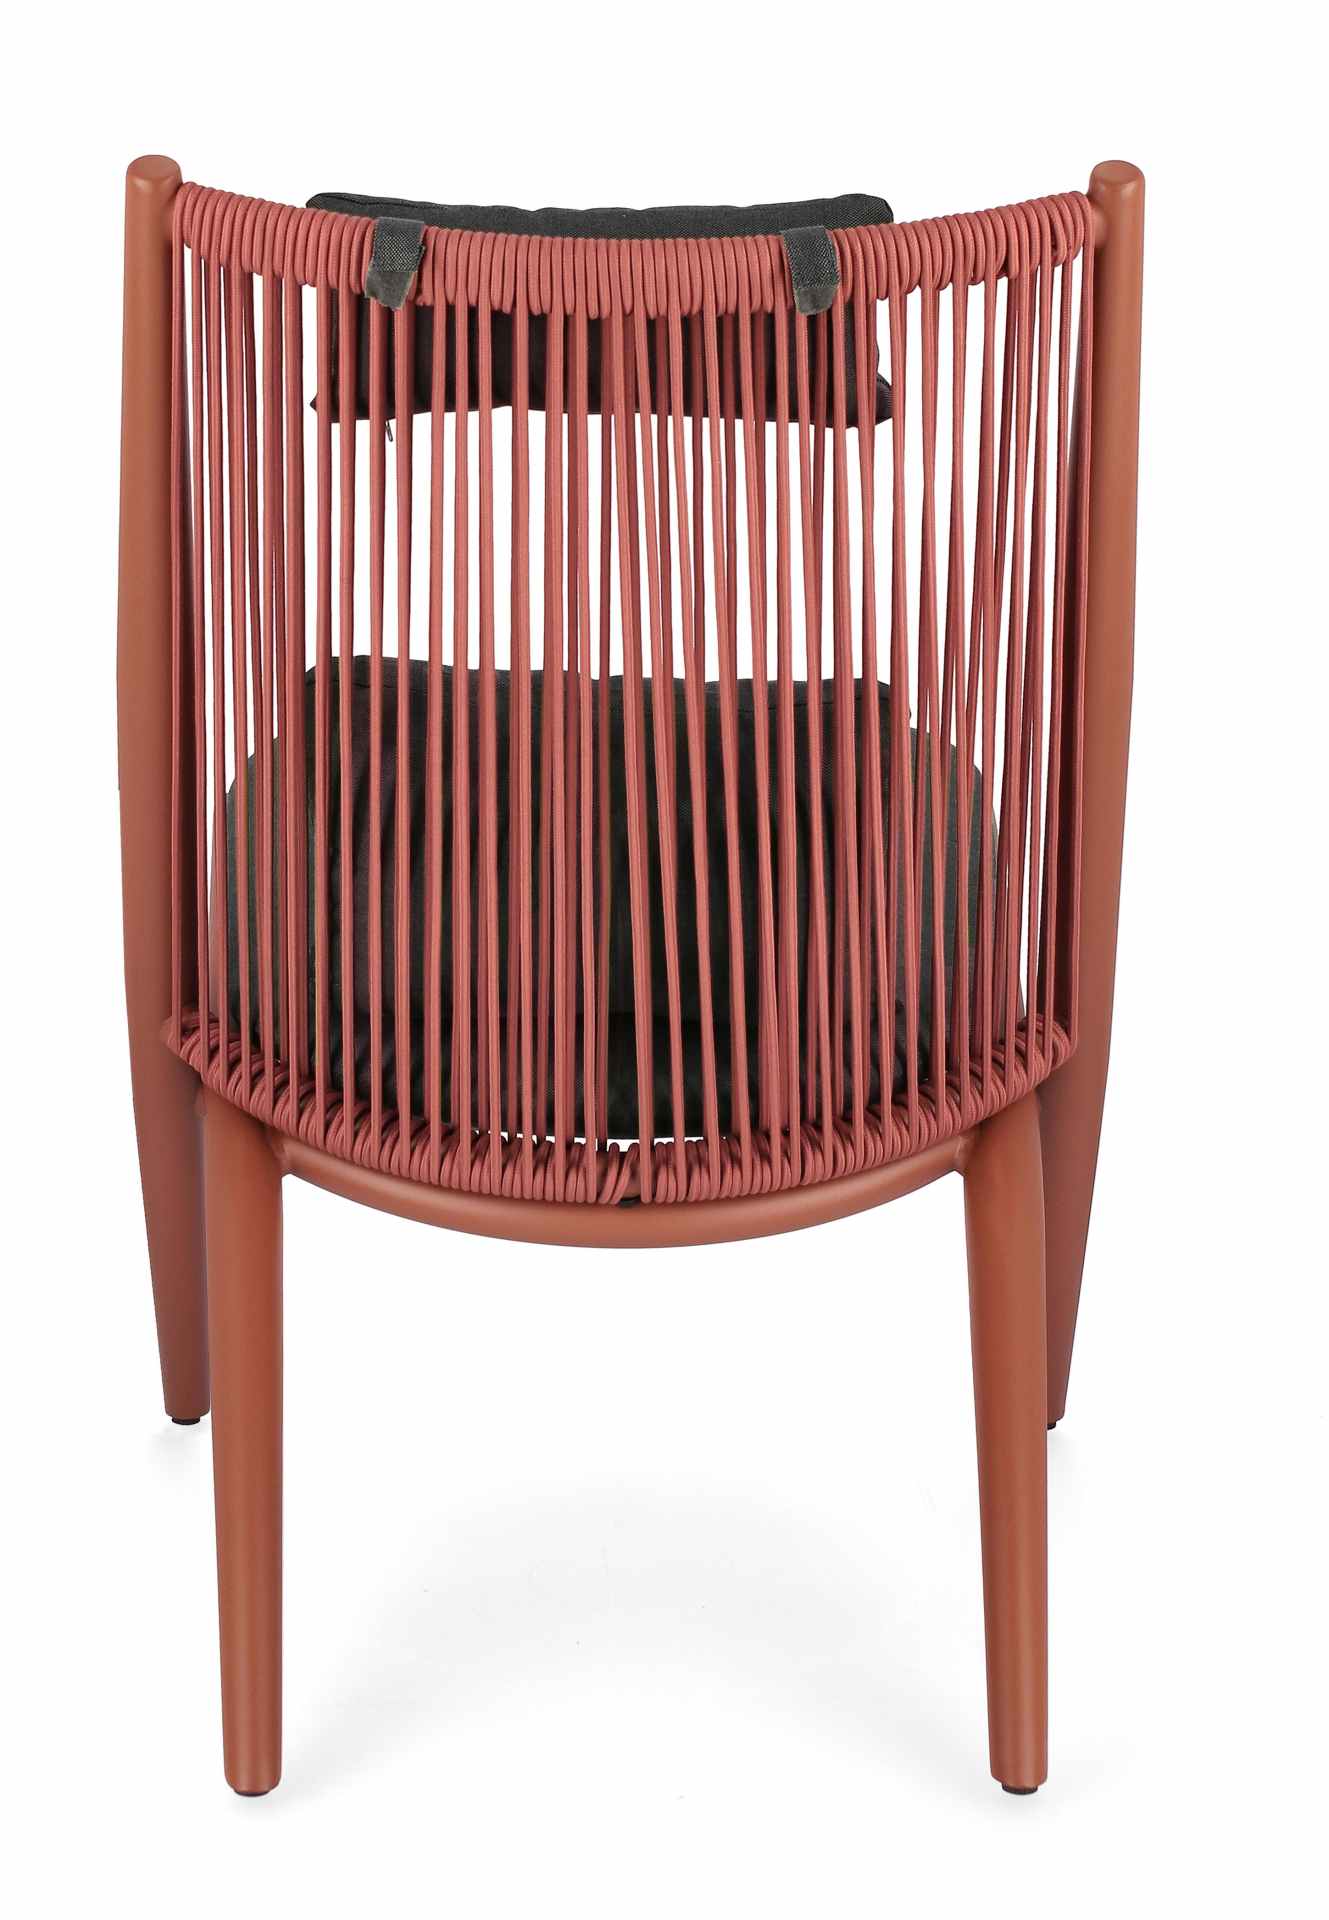 Der Gartensessel Aloha überzeugt mit seinem modernen Design. Gefertigt wurde er aus Kunstfaser-Stoff, welcher einen grauen Farbton besitzt. Das Gestell ist aus Aluminium und hat eine rote Farbe. Der Sessel verfügt über eine Sitzhöhe von 46 cm und ist für 